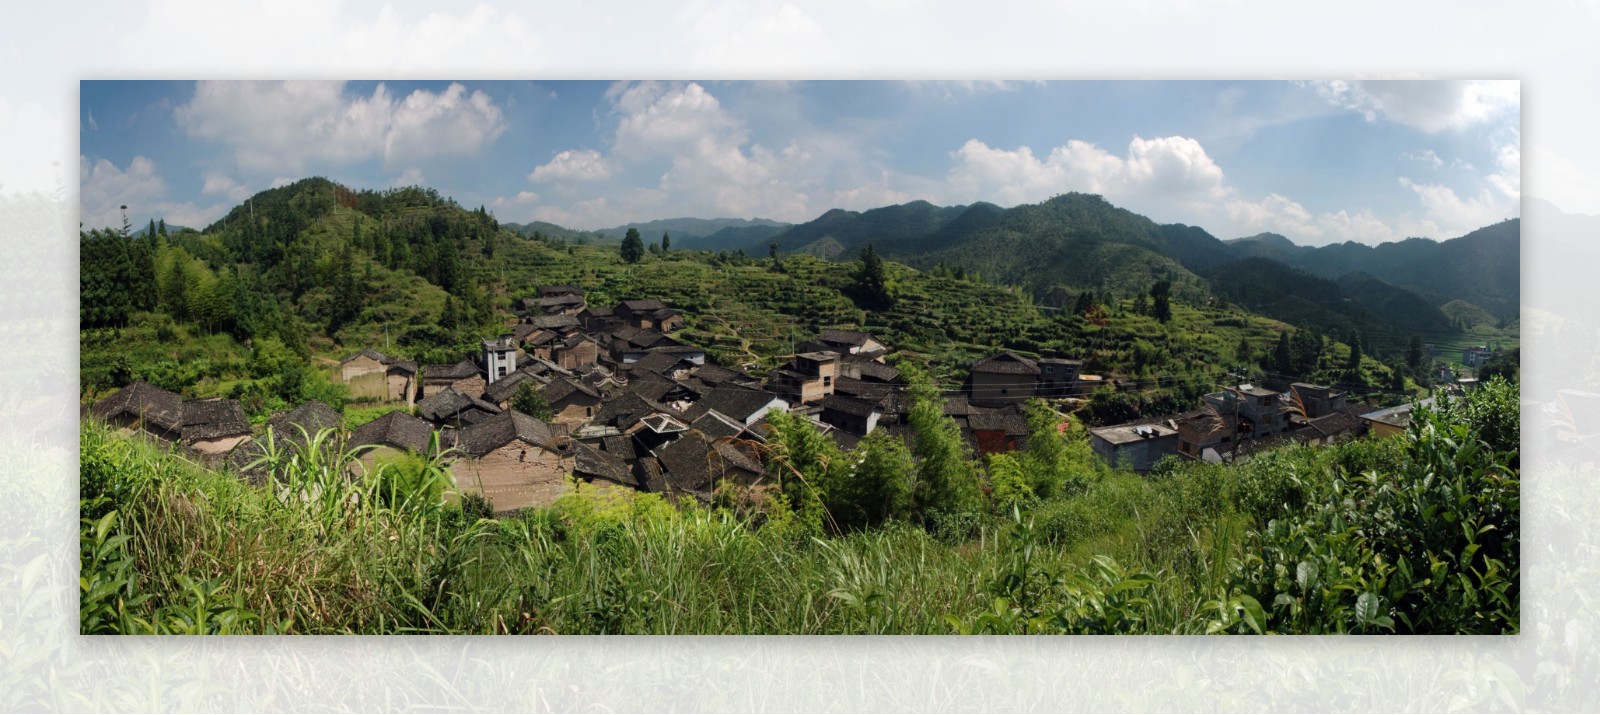 村庄全景图片